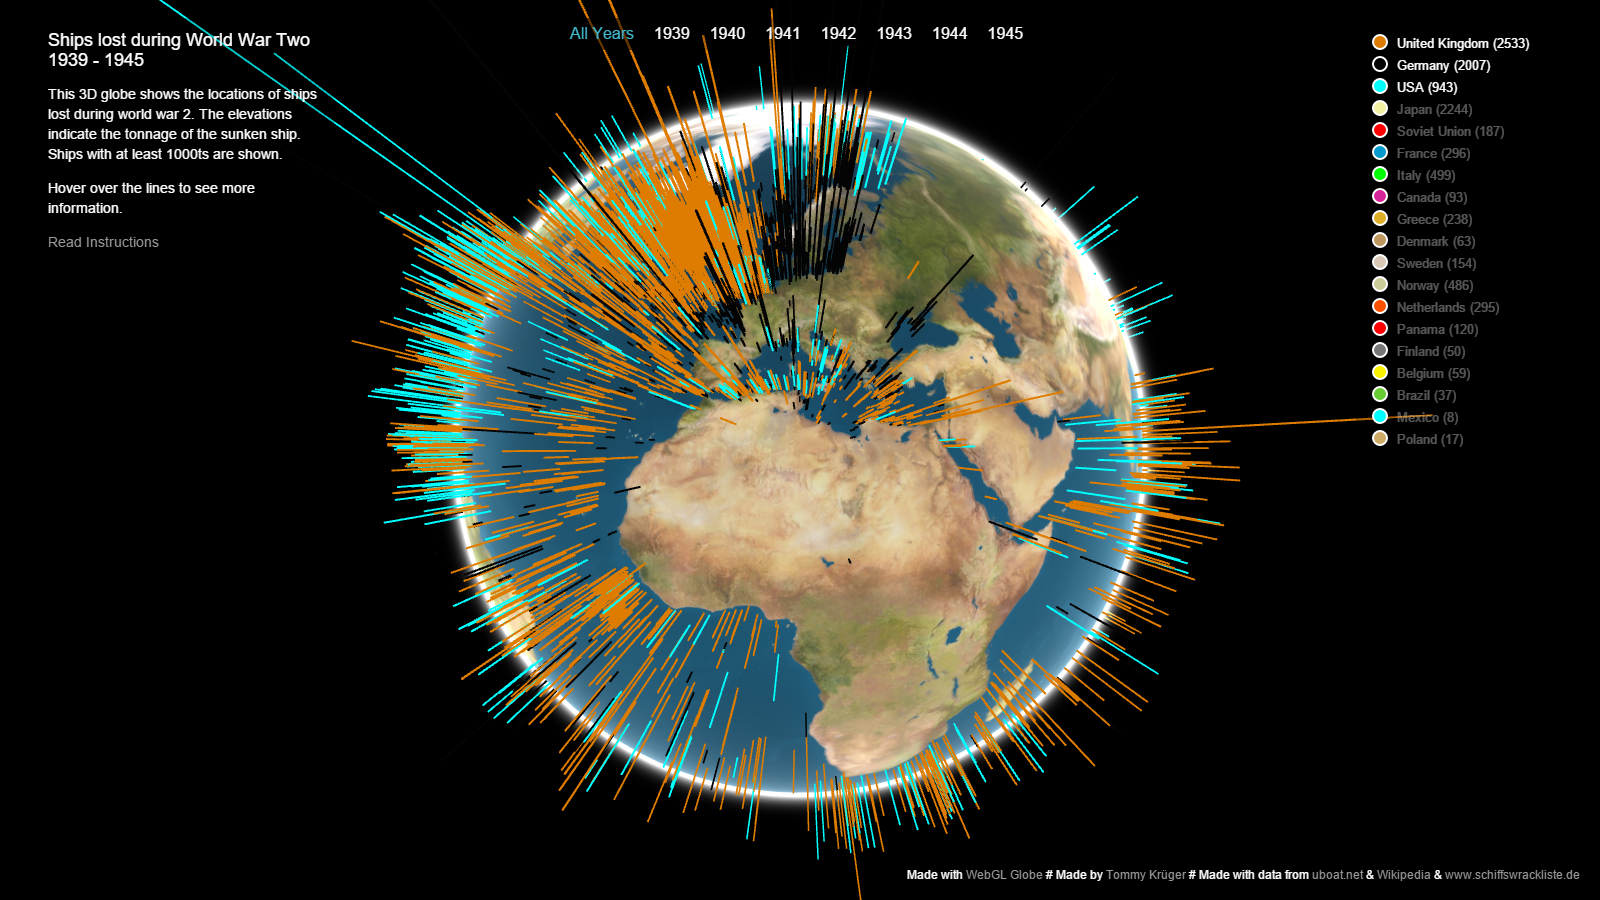 Interaktive Visualisierung der Schiffsverluste des Zweiten Weltkriegs auf einer Globus-Oberfläche